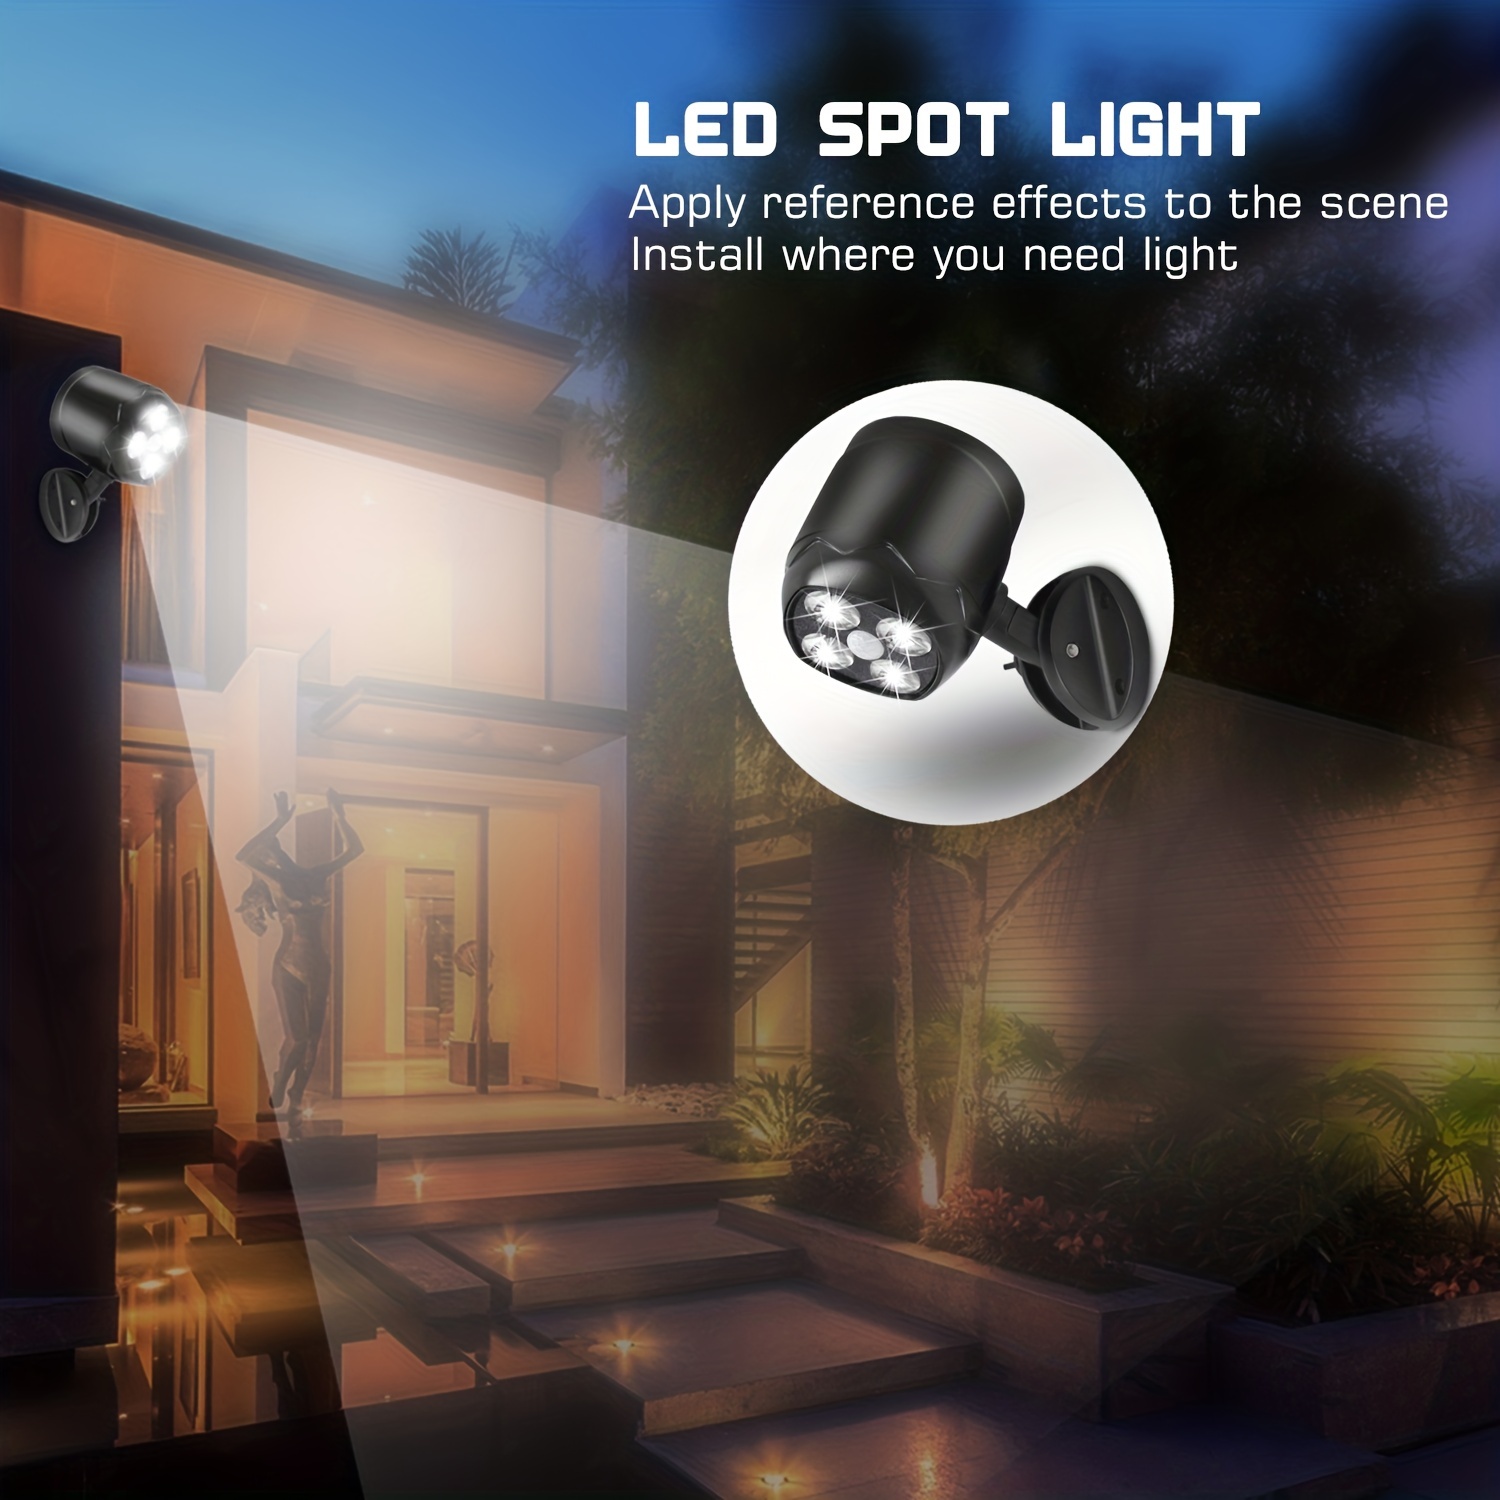 Saca el máximo partido a tu patio con las luces LED - Compratuled